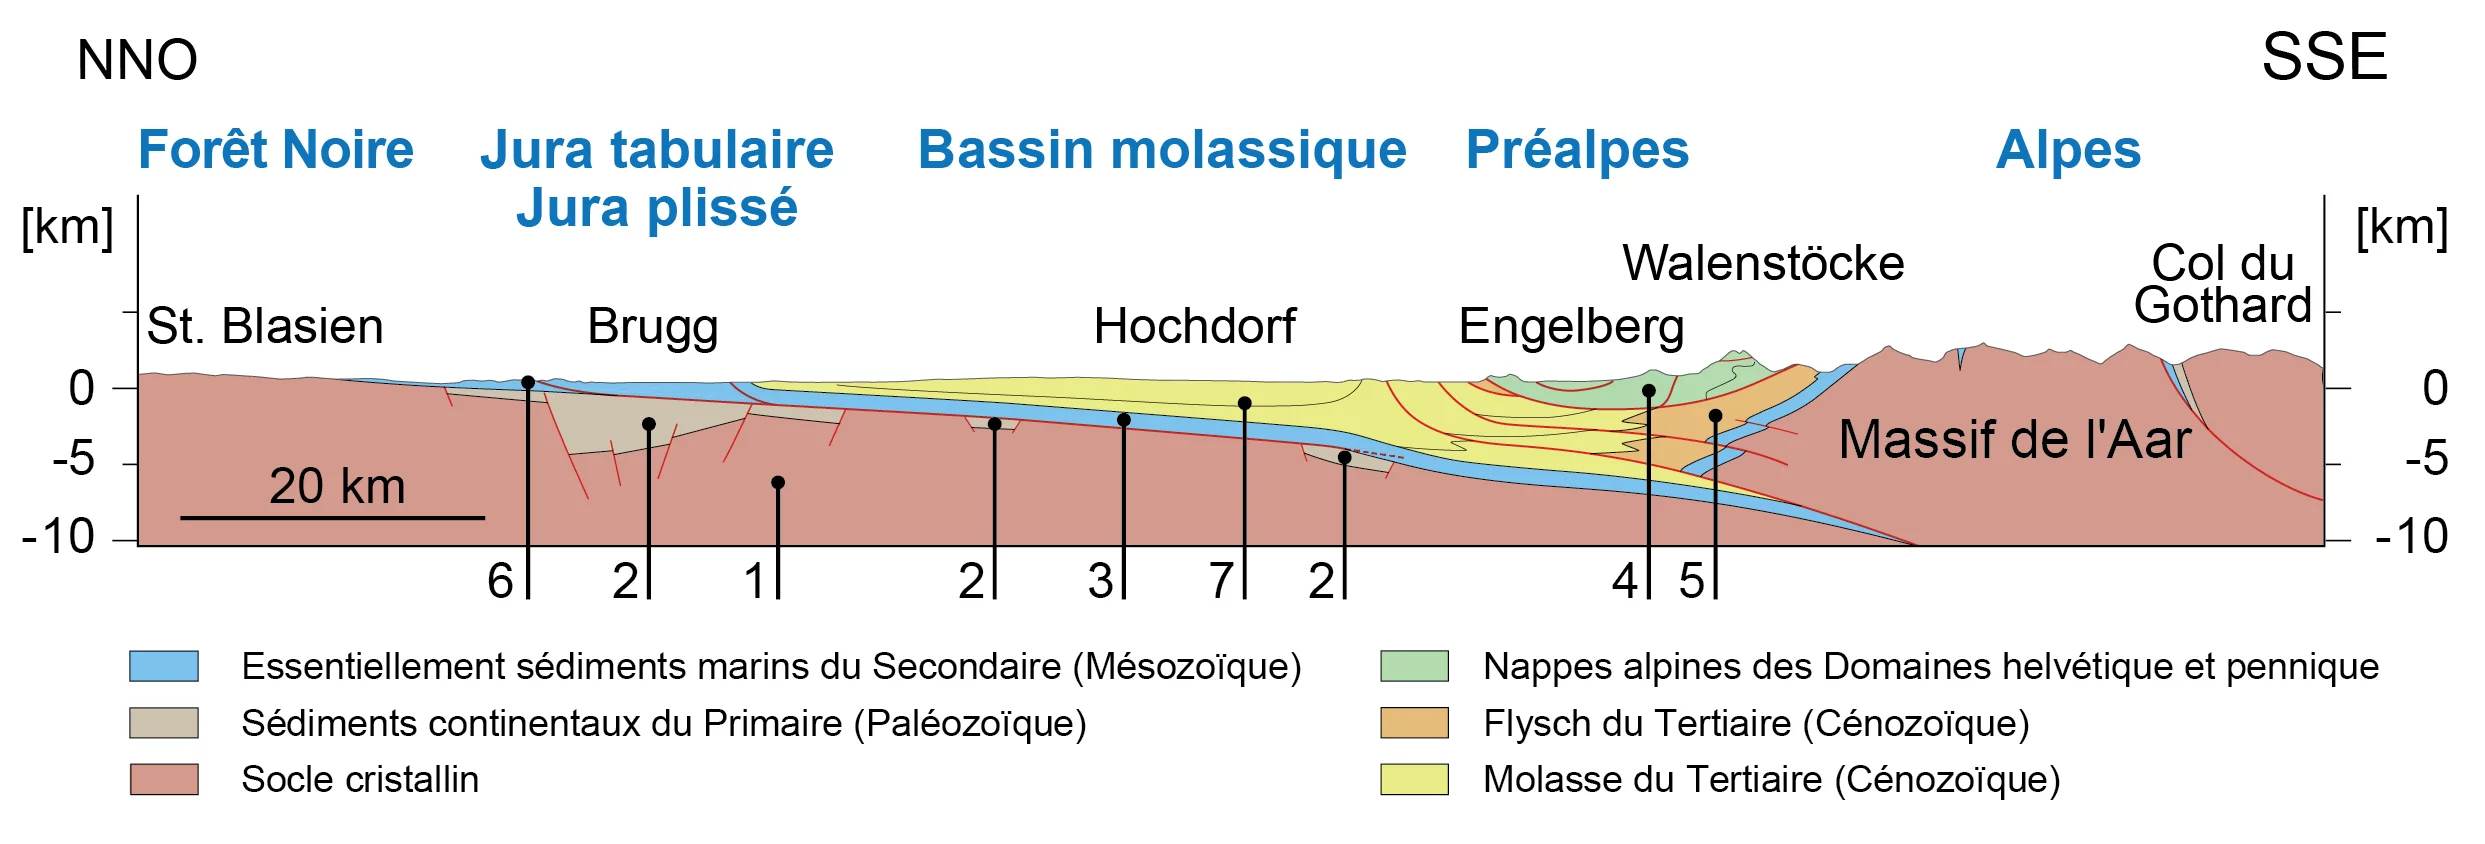 Profil géologique de la Suisse de nord-nord-ouest à sud-sud-est (explication des numéros dans le texte). Source : Nagra NTB 14-02, Dossier III (très simplifié).